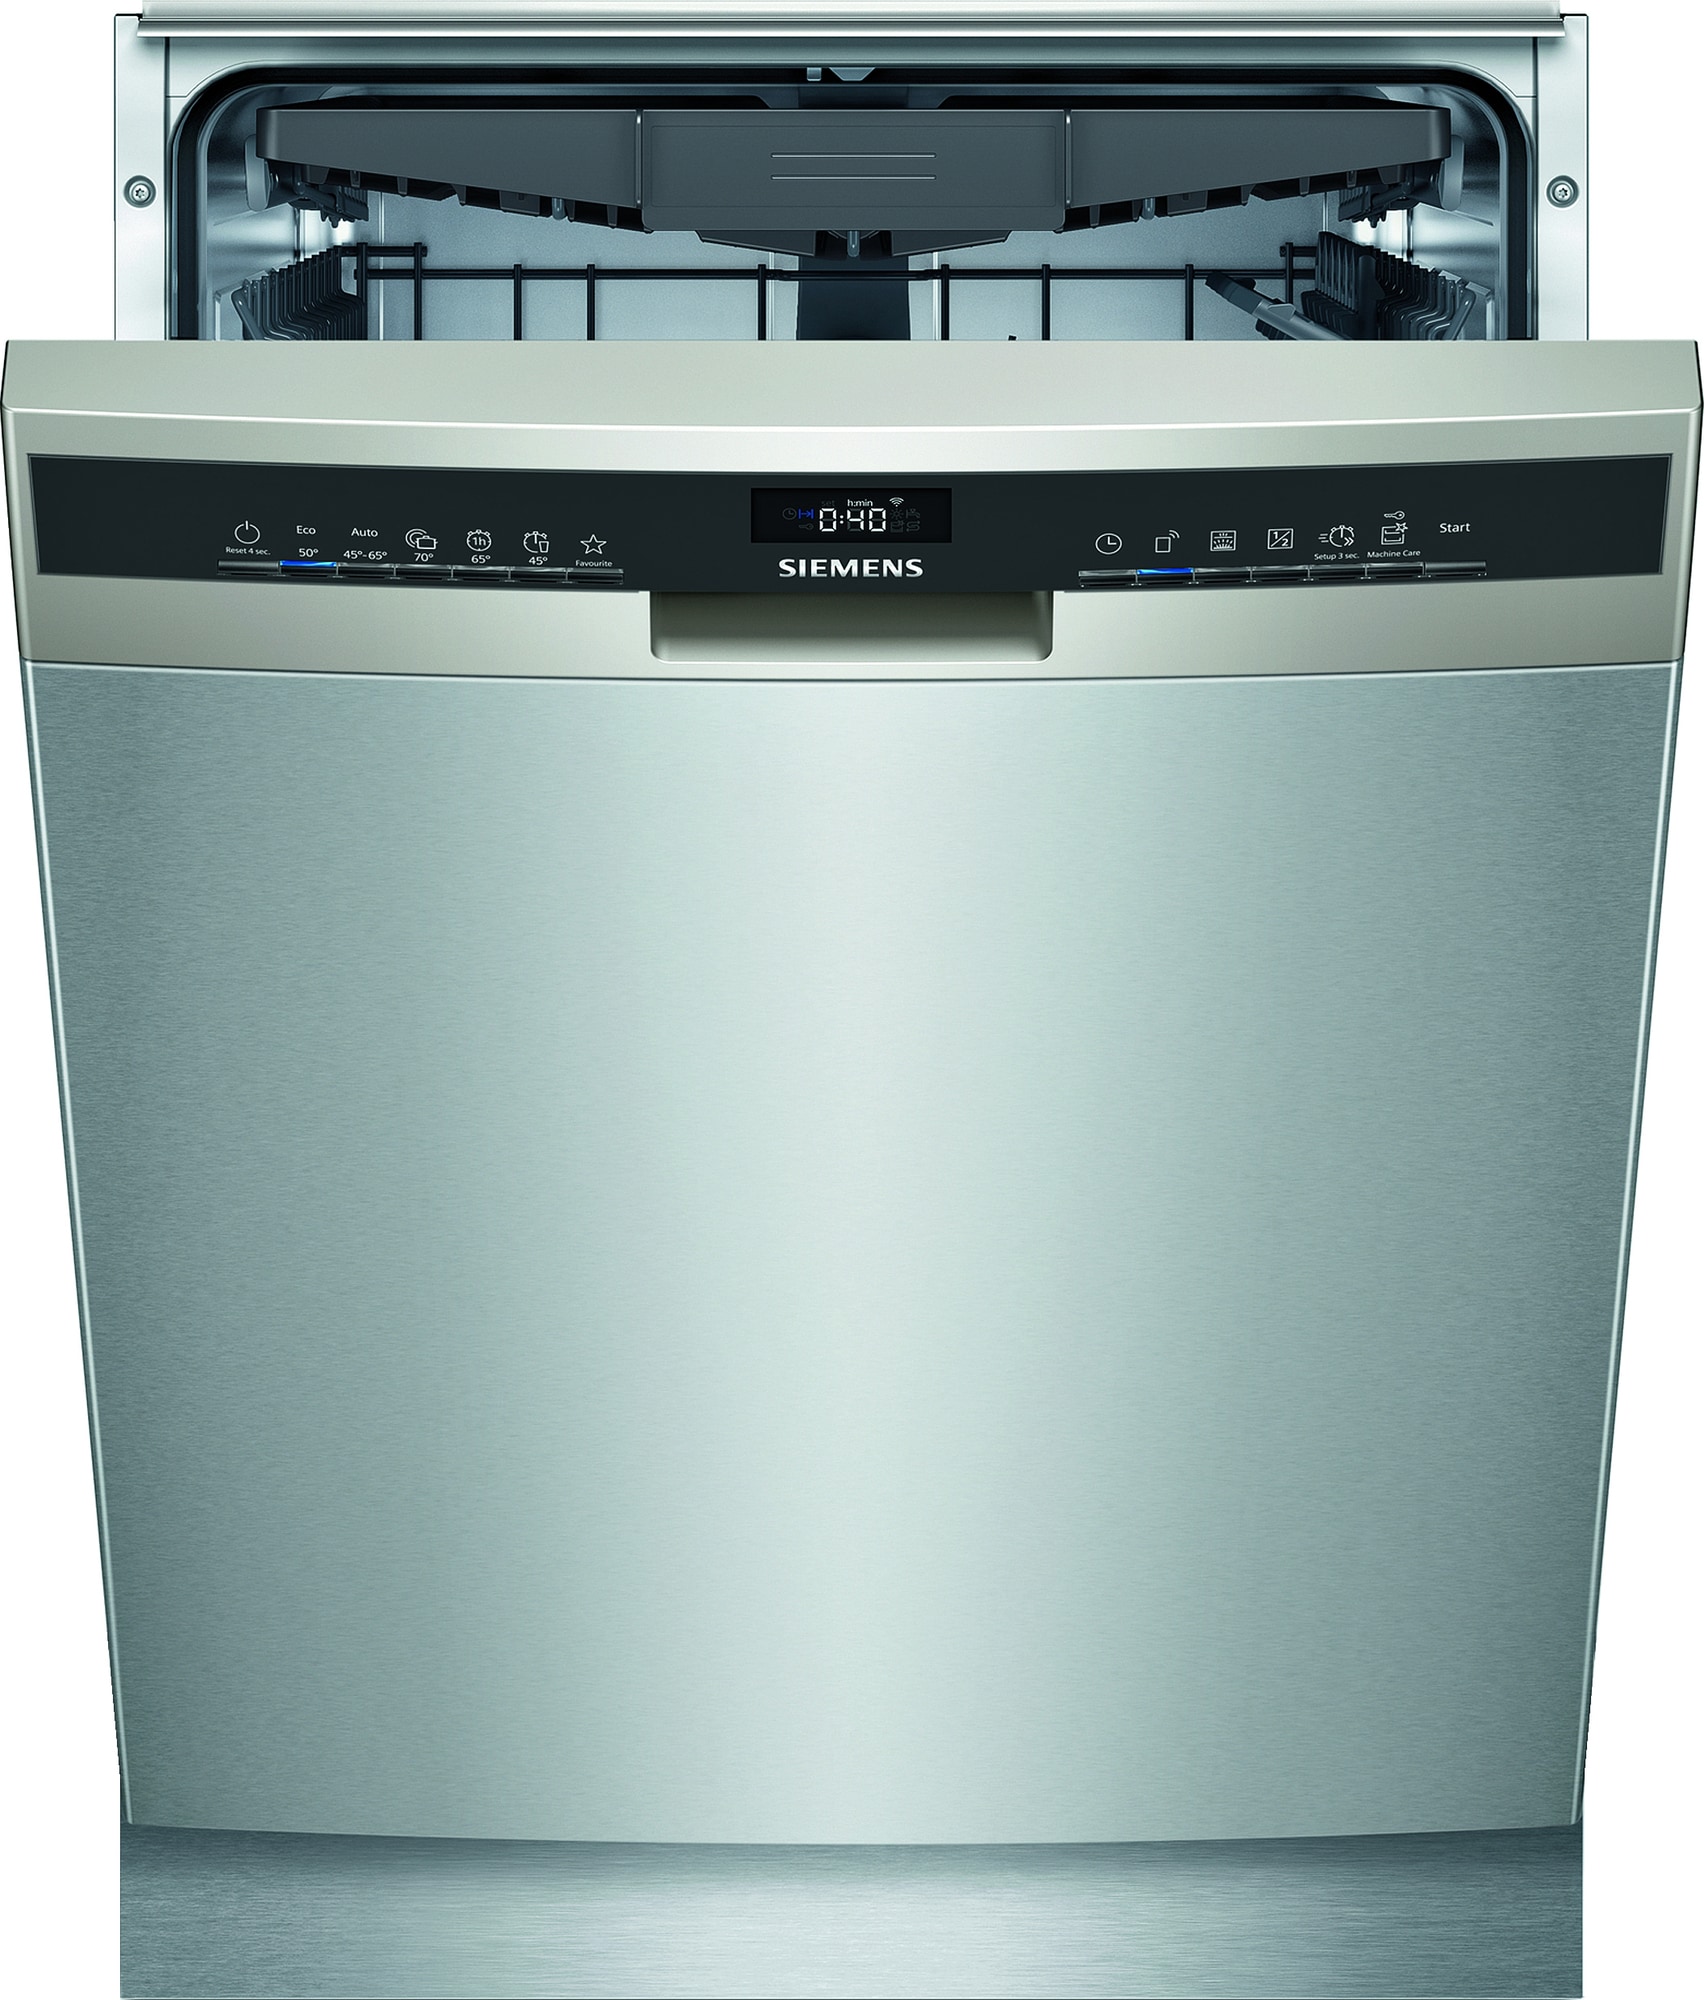 Køb Siemens Opvaskemaskine online til meget lav pris!